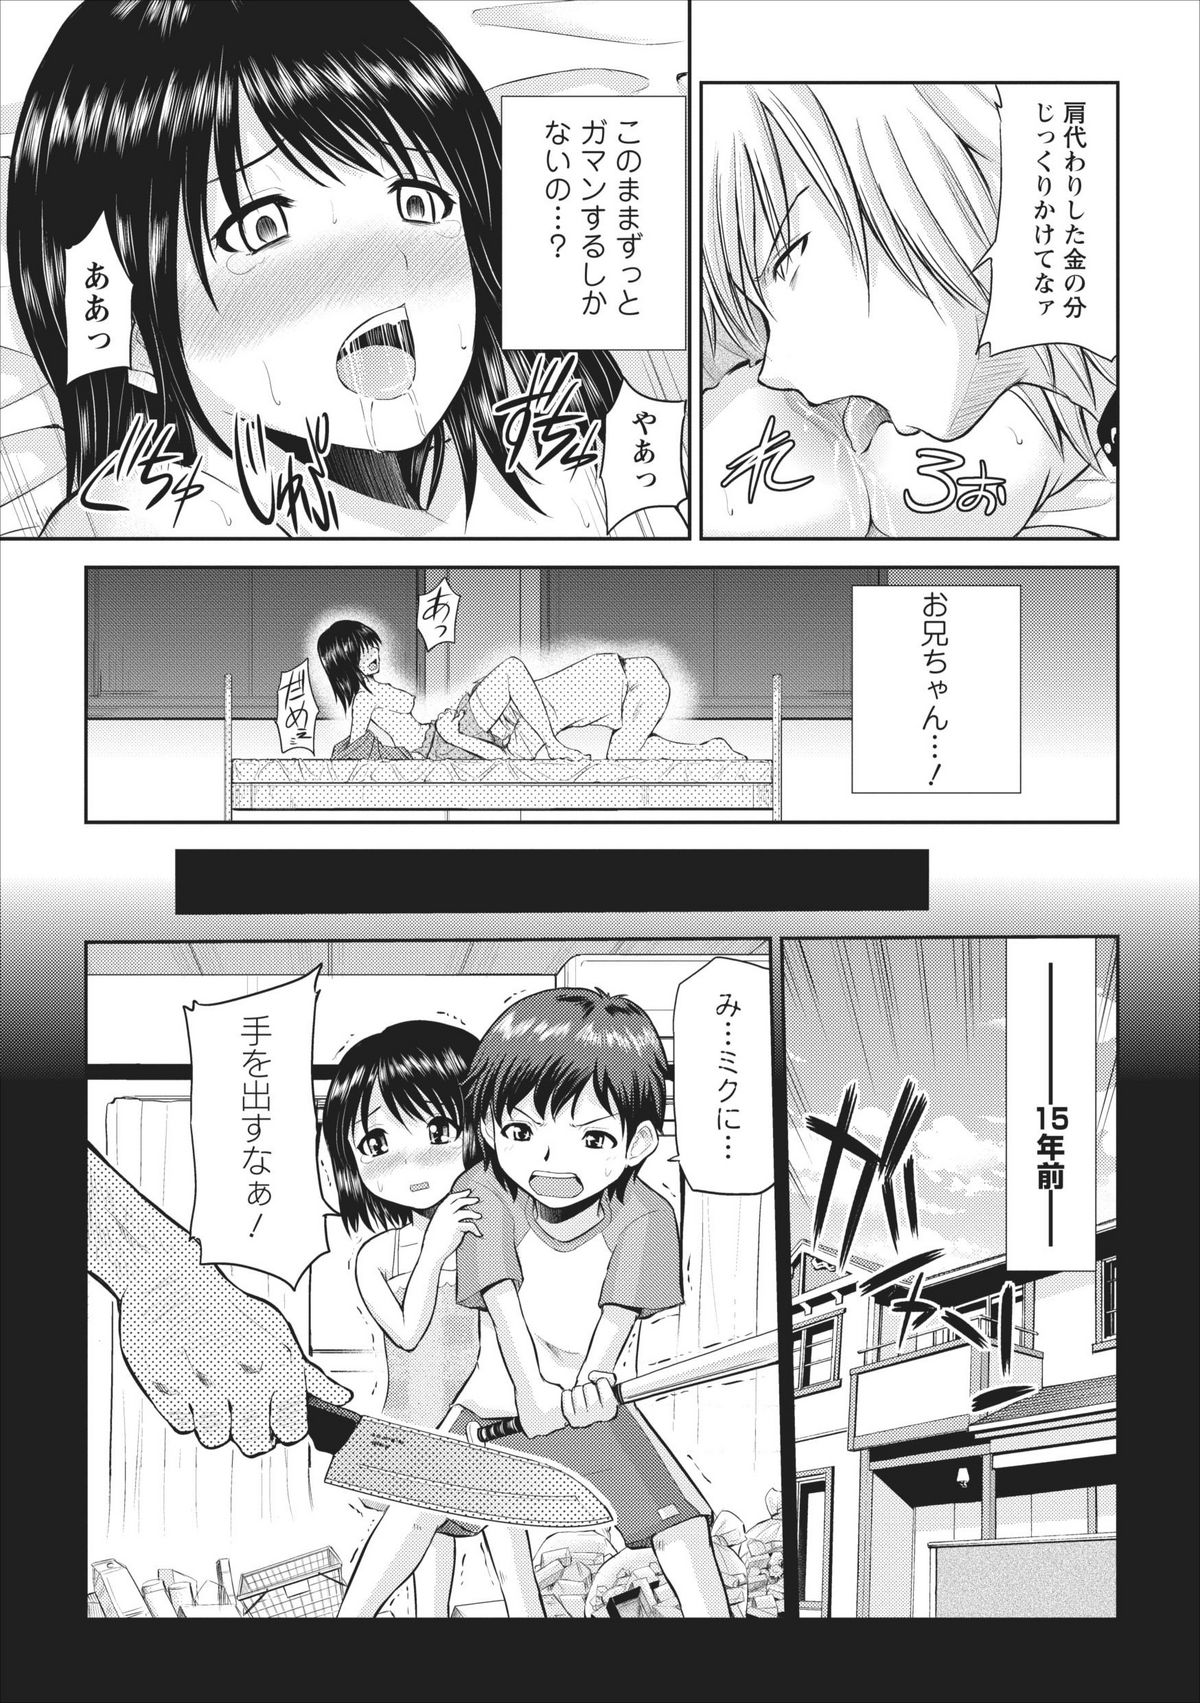 [Yano Toshinori] Tasukete... Onii-chan...! ch.2 page 7 full